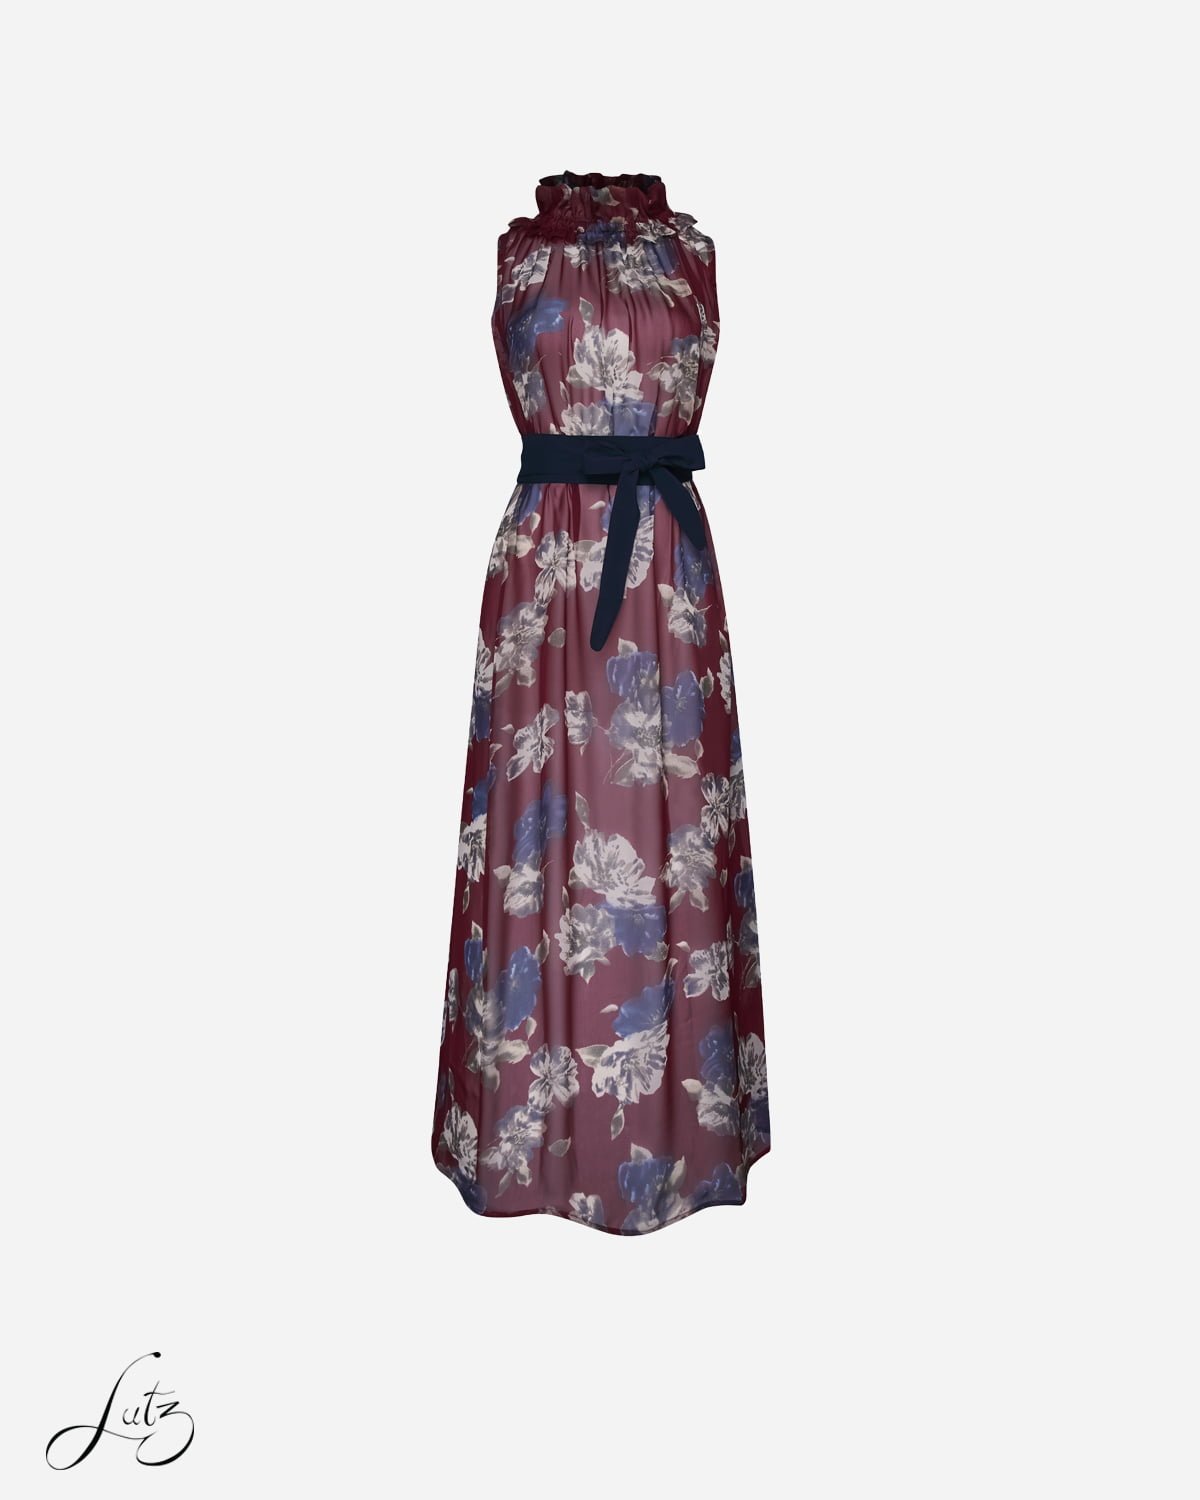 Mới) mã h5282 giá 1020k: váy đầm liền thân nữ taryc dài tay hàng mùa hè  phong cách âu mỹ thời trang nữ đồ đi biển váy maxi chất liệu vải voan